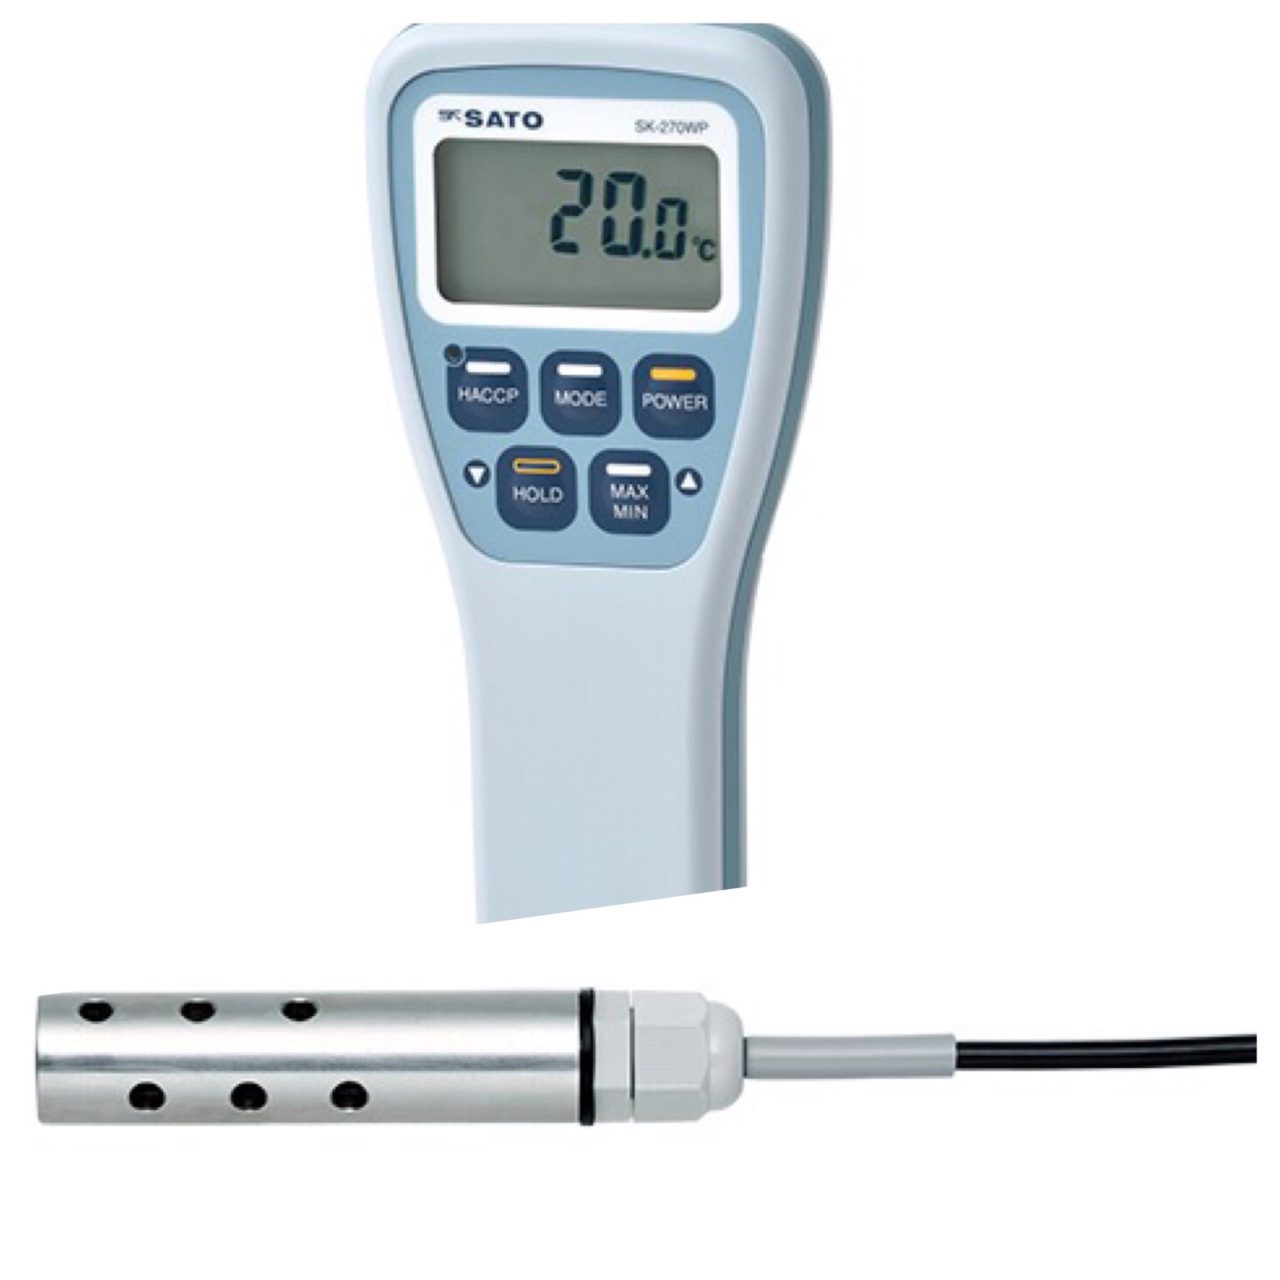 防水型デジタル温度計 SK-270WP（指示計のみ）+S270WP-31投げ込みセンサ